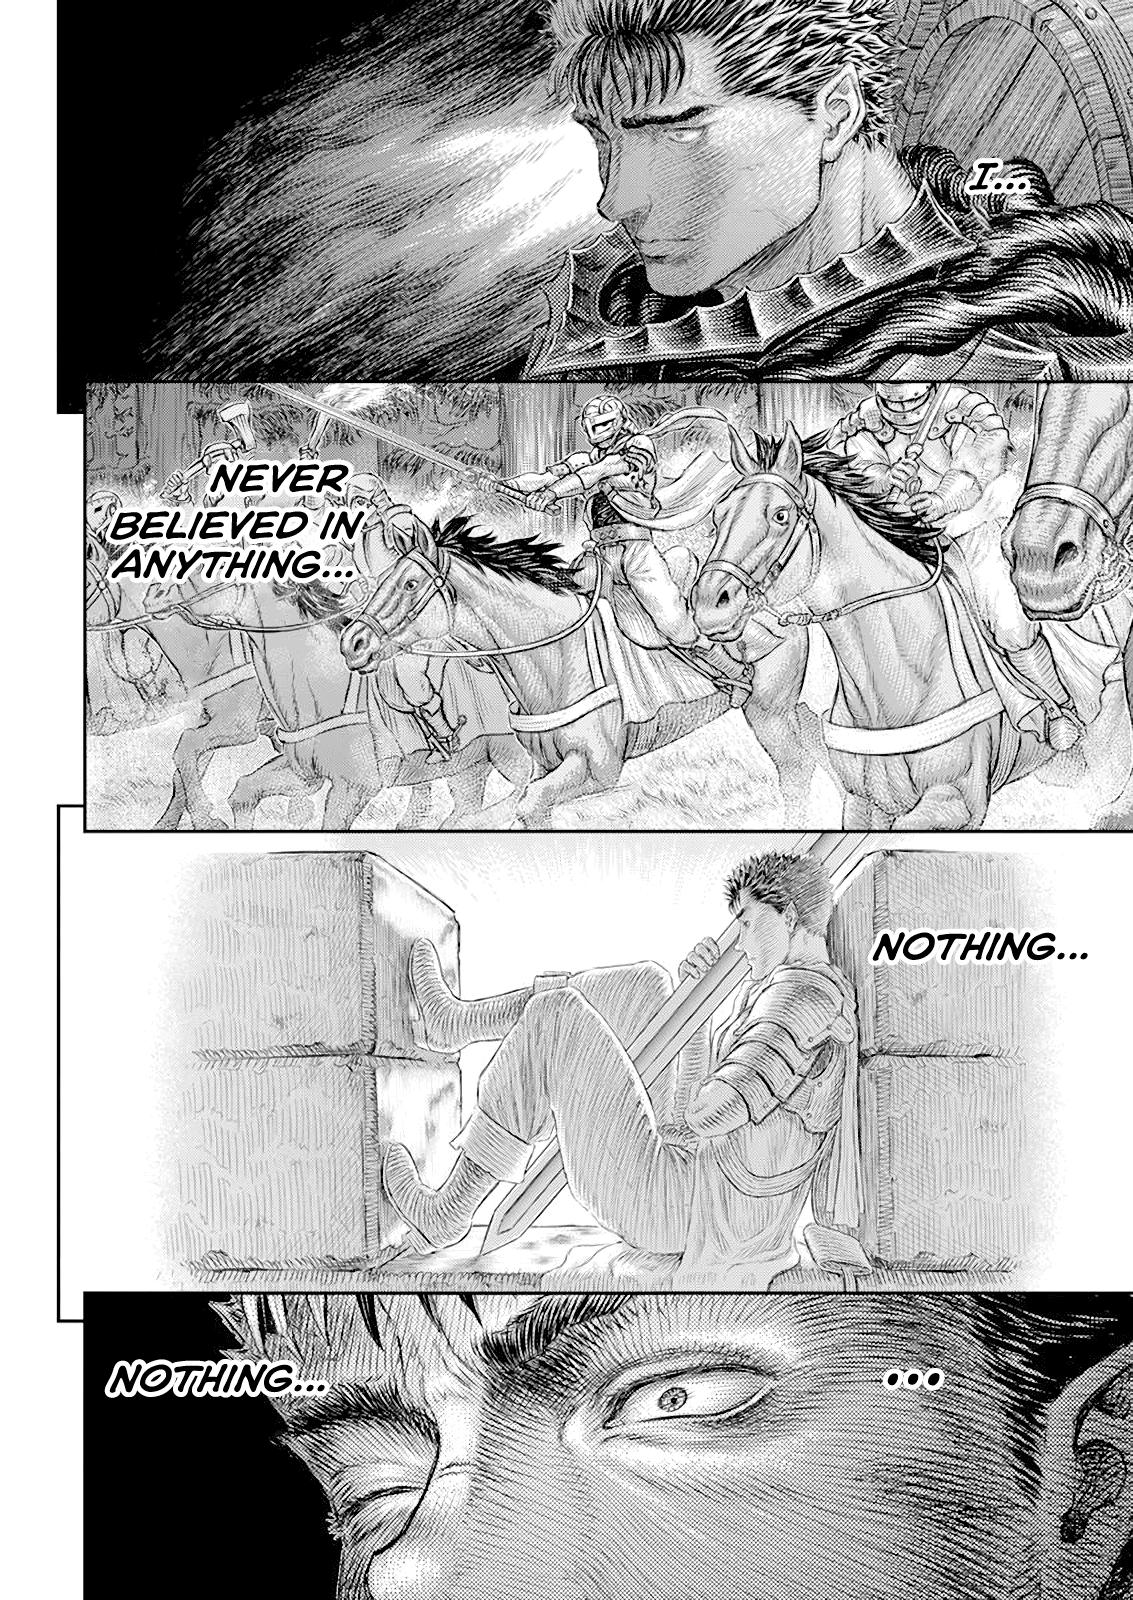 Berserk Manga Chapter 370 image 15